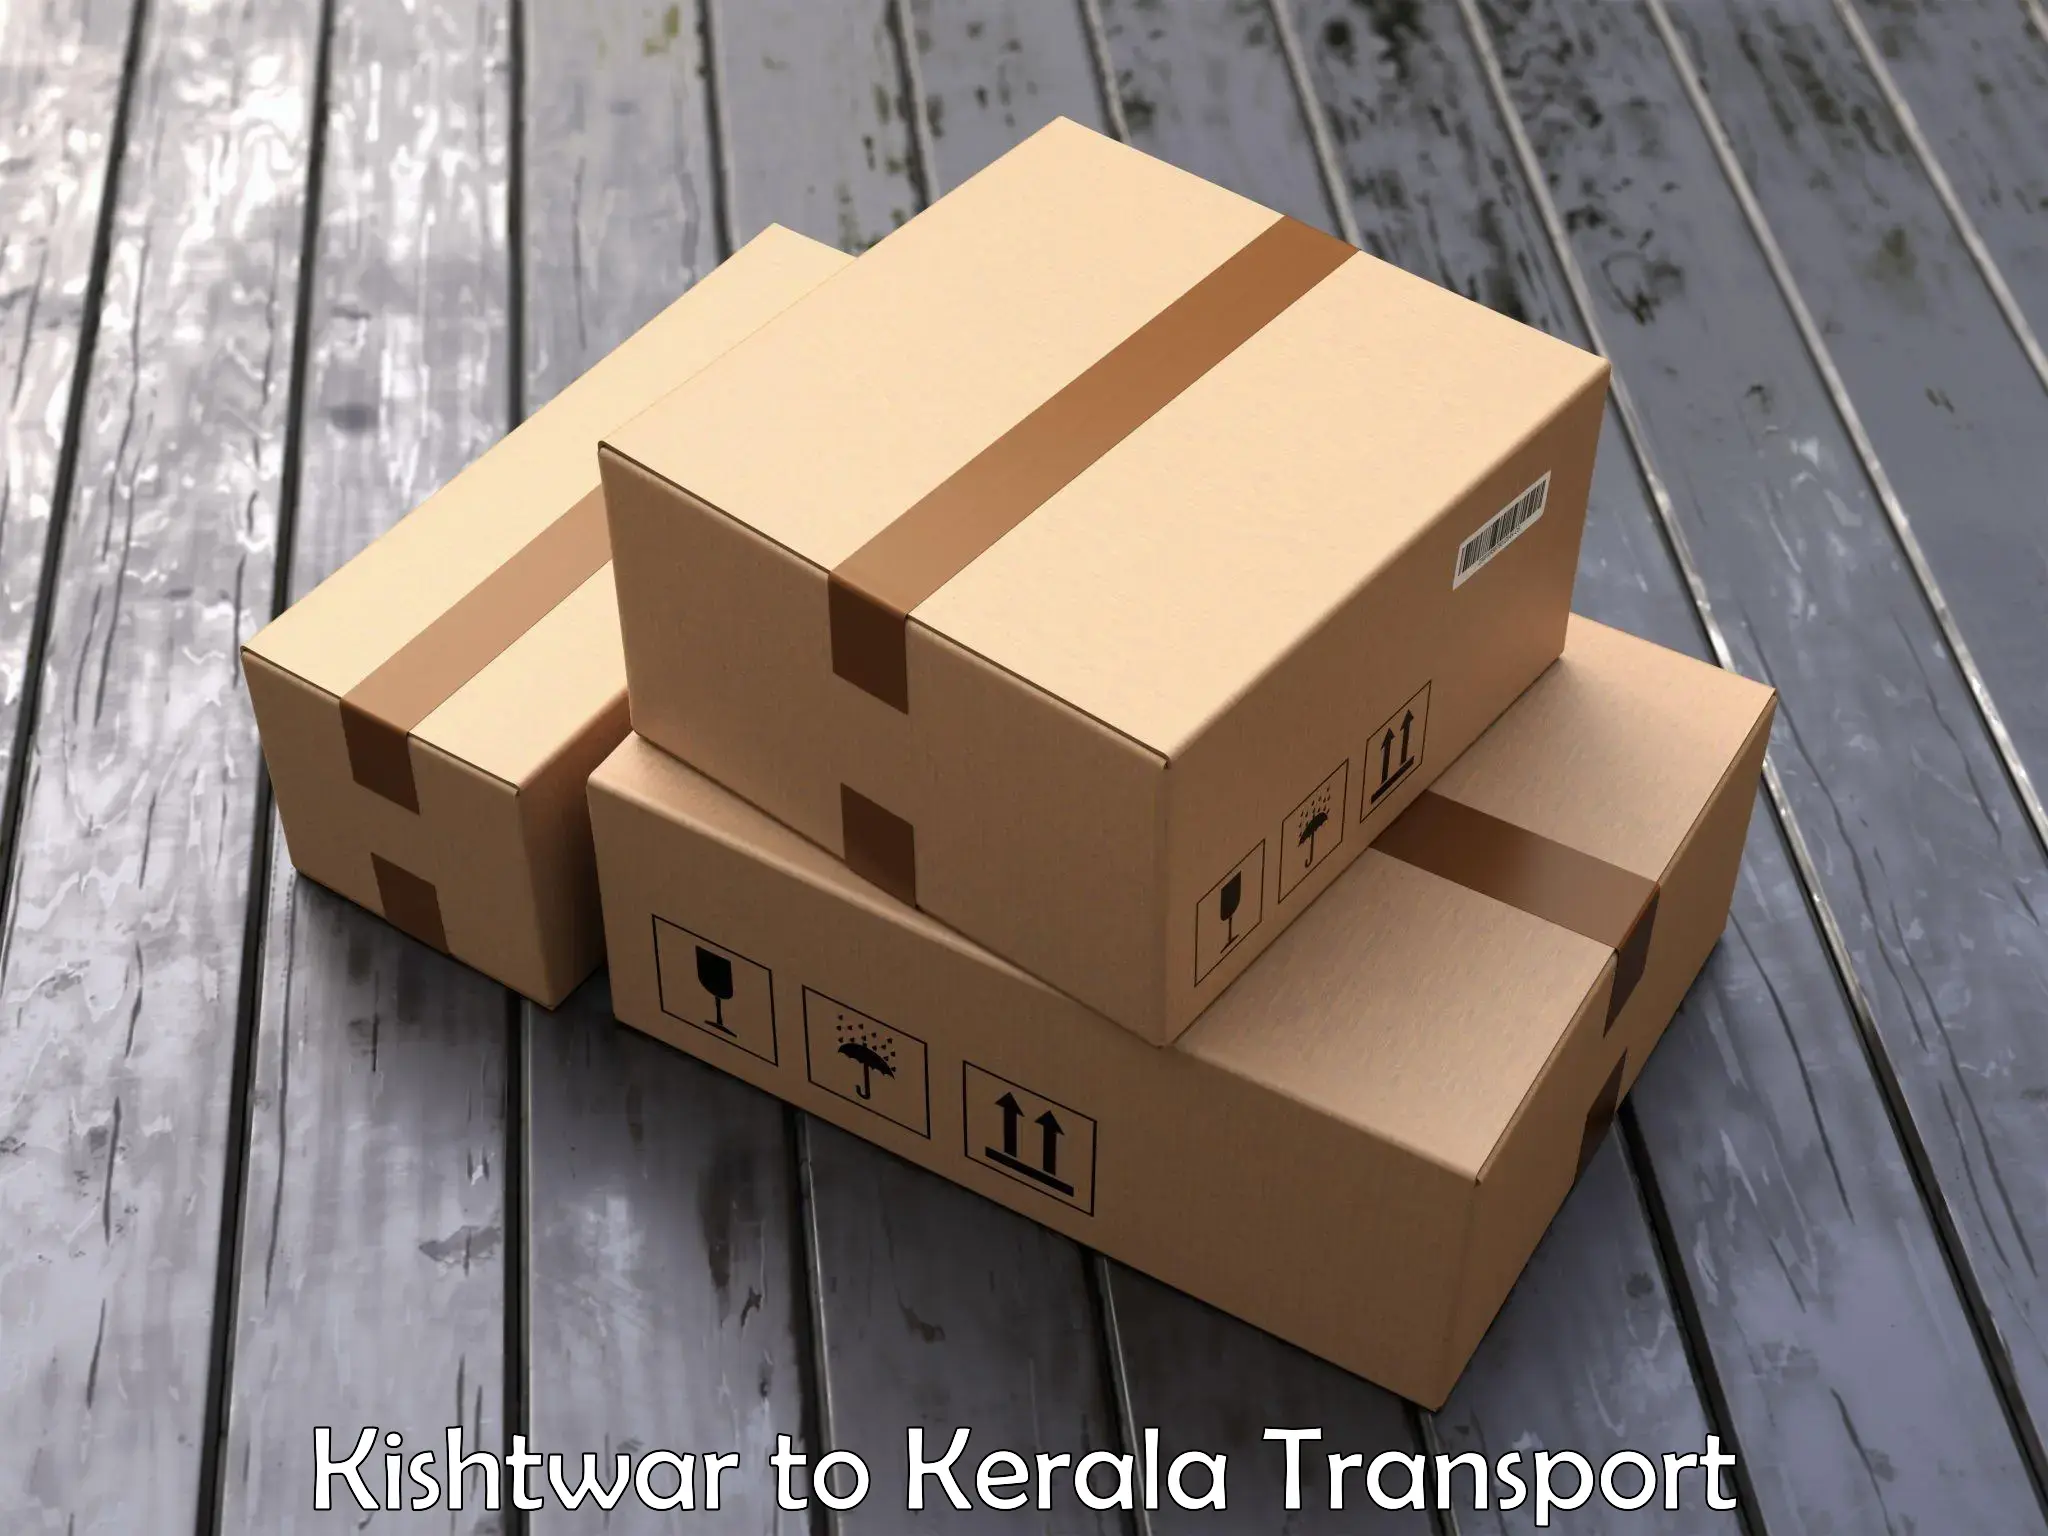 Two wheeler parcel service Kishtwar to Kerala